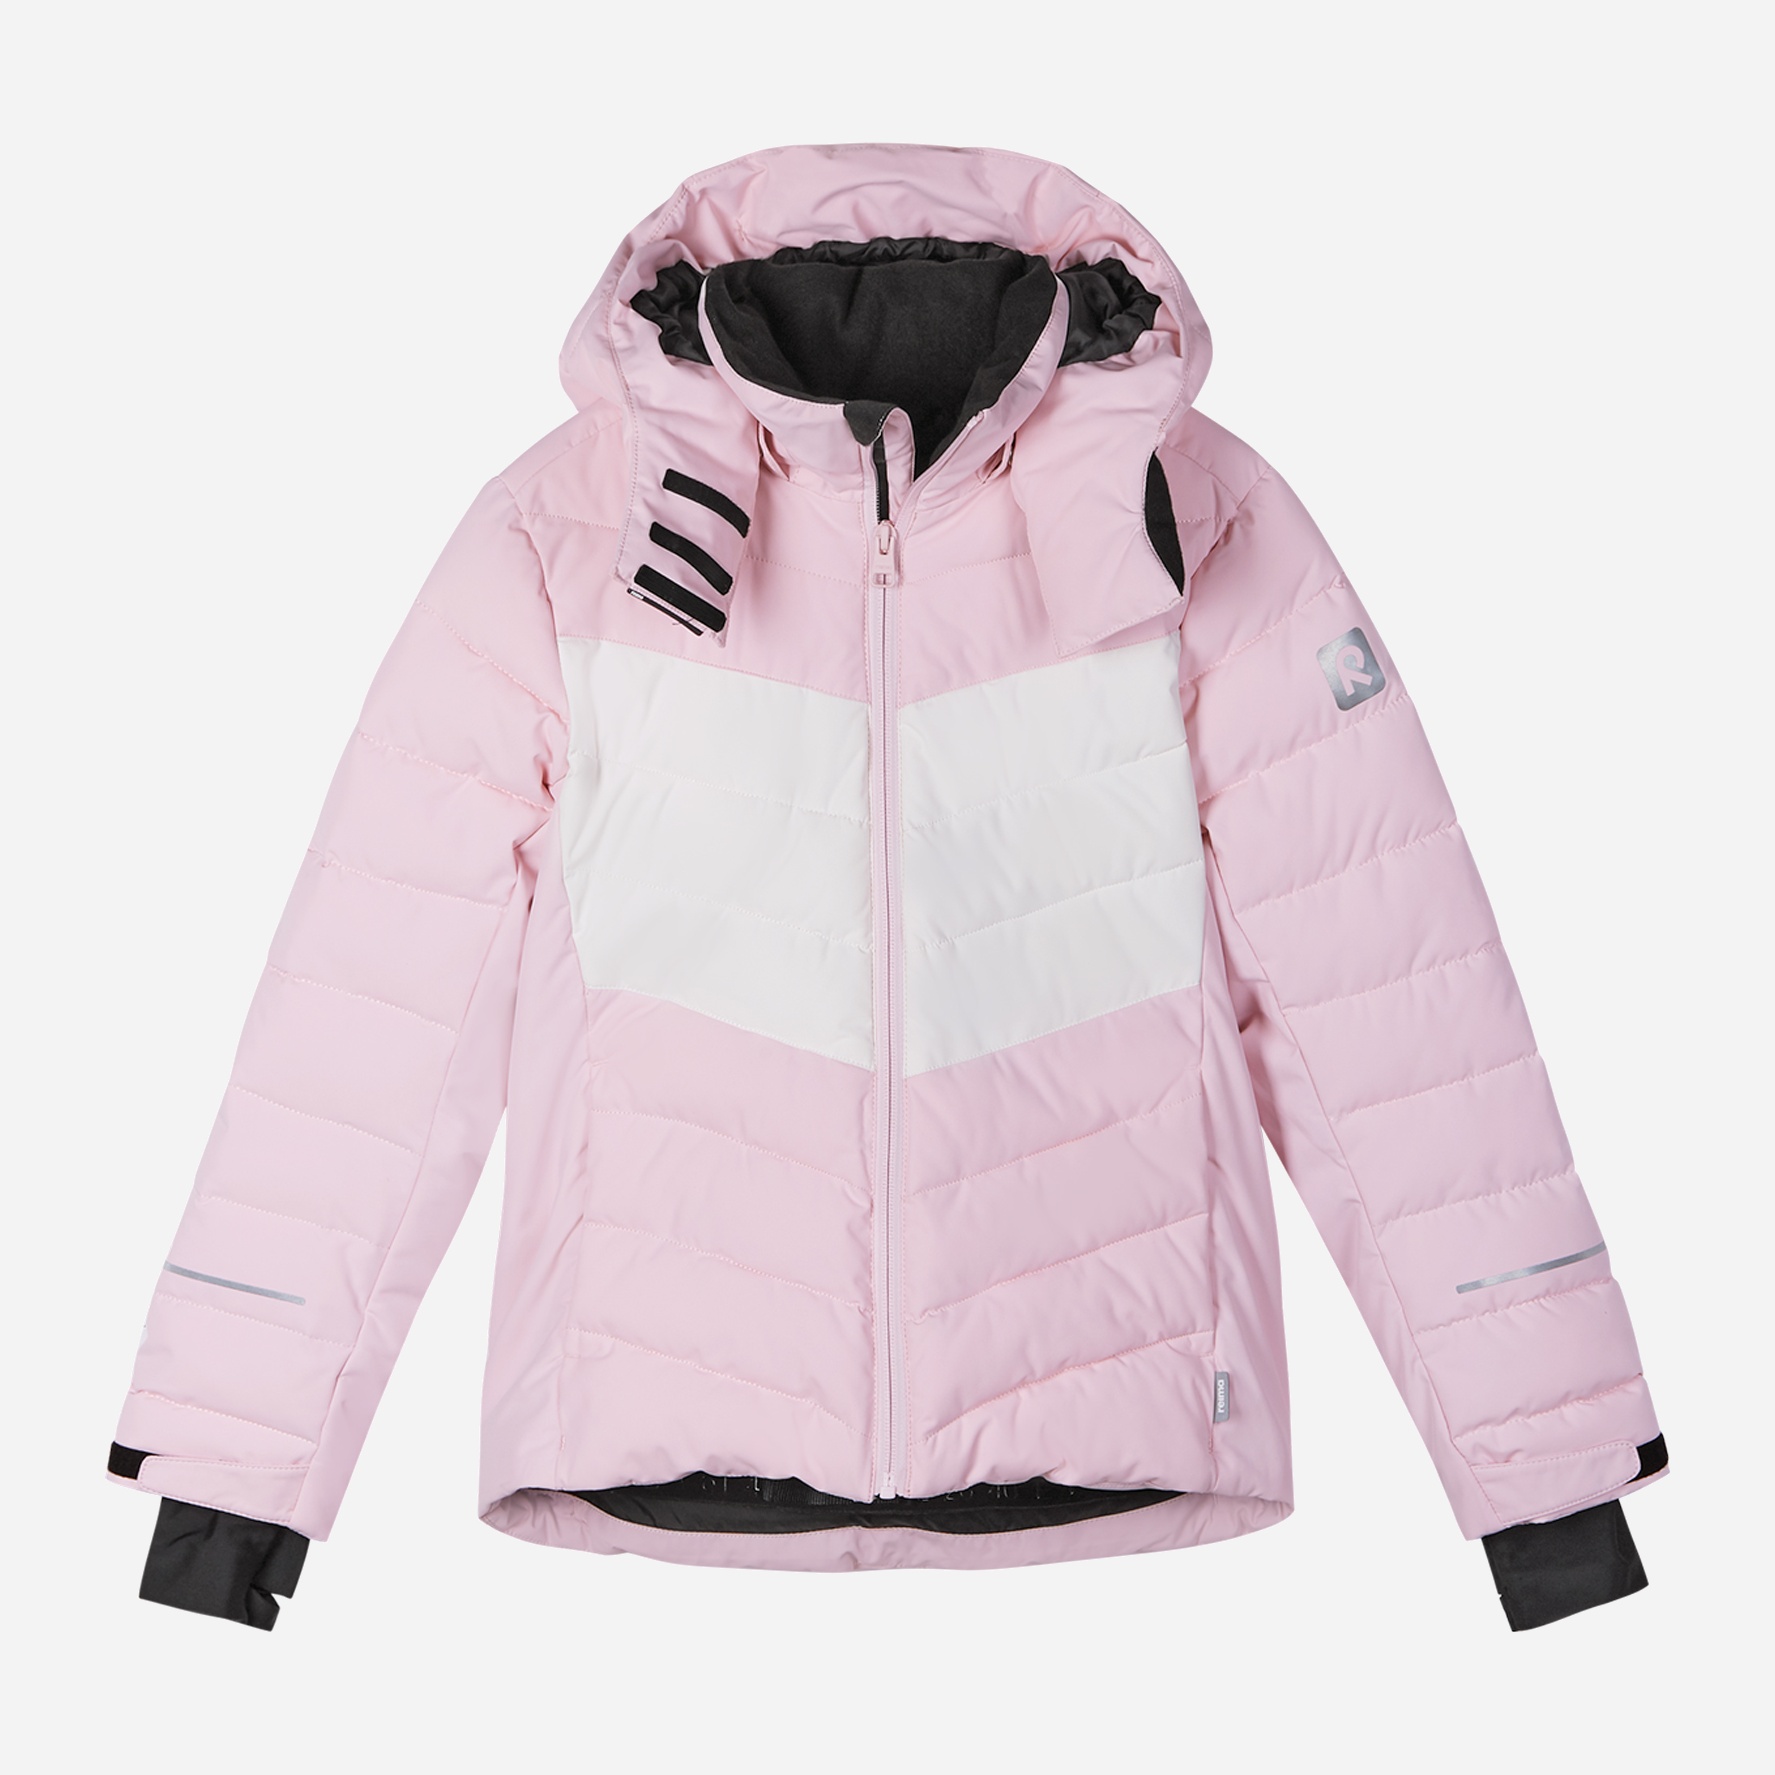 Акция на Підліткова зимова термолижна куртка для дівчинки Reima Saivaara 531556-4010 164 см от Rozetka